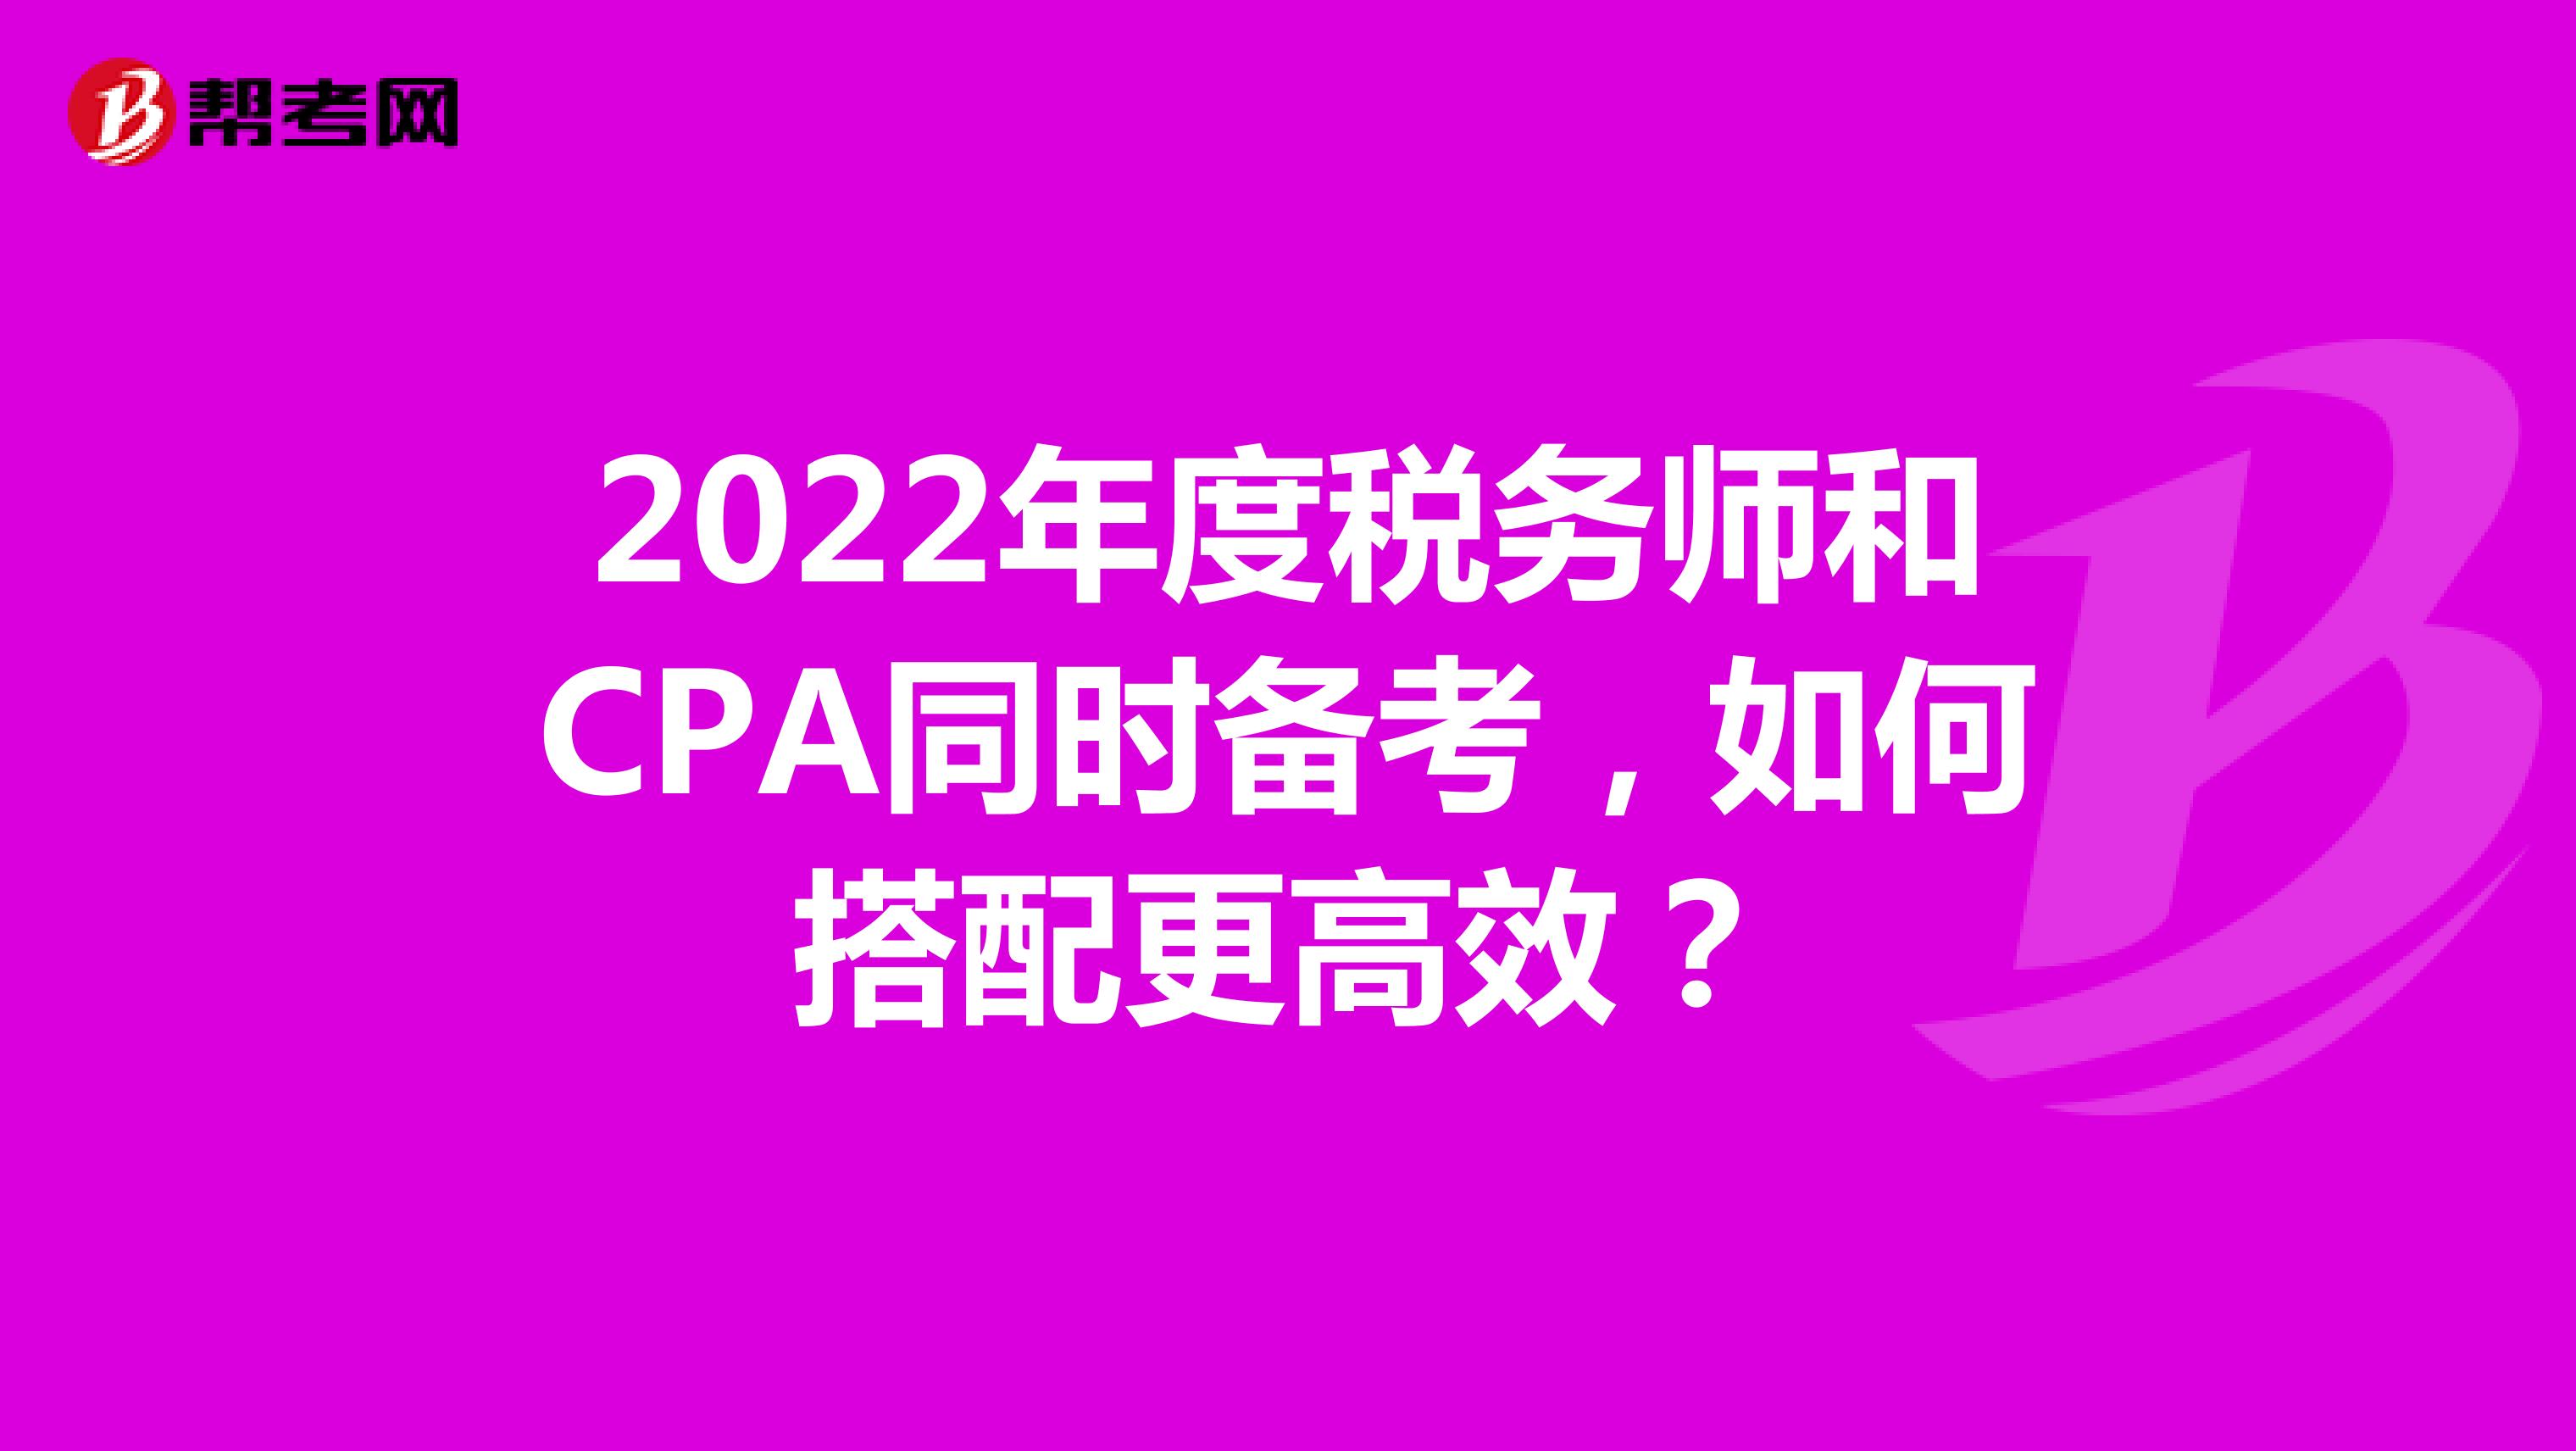 2022年度税务师和CPA同时备考，如何搭配更高效？